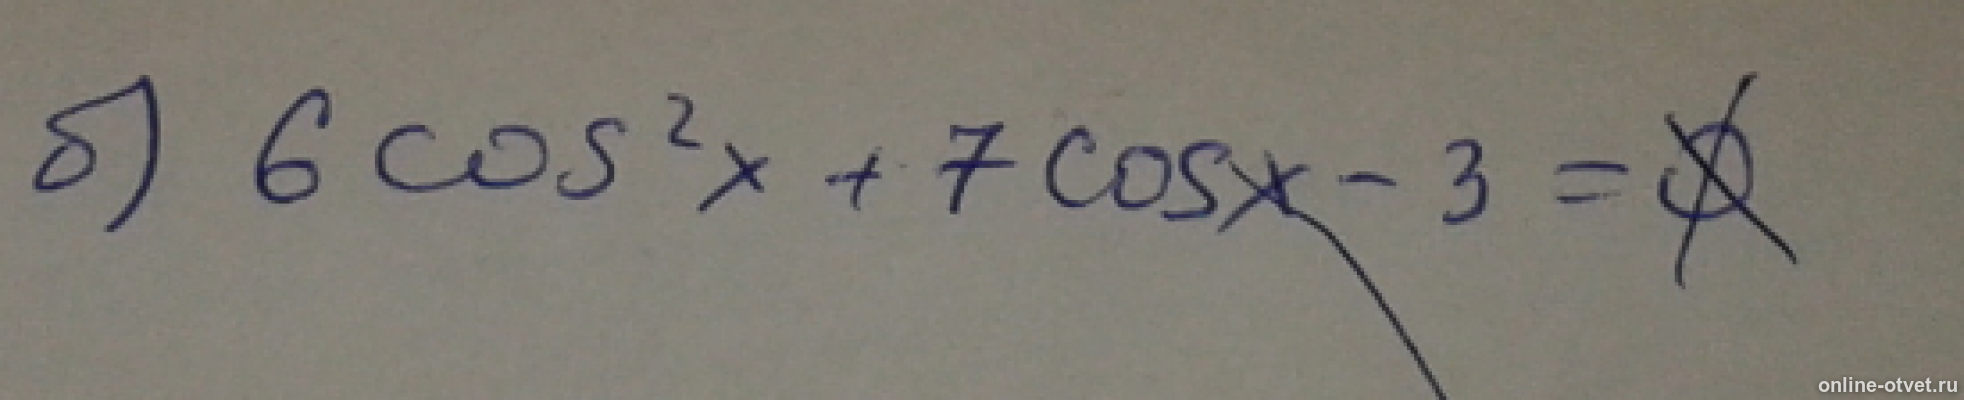 (Cos𝑥)2+7cos𝑥+6=0. 6cos2x+7cosx-3=0. 6cos2x-cosx-2 корень -sinx. -6cos x = cos x 7 3 2. Vi cos